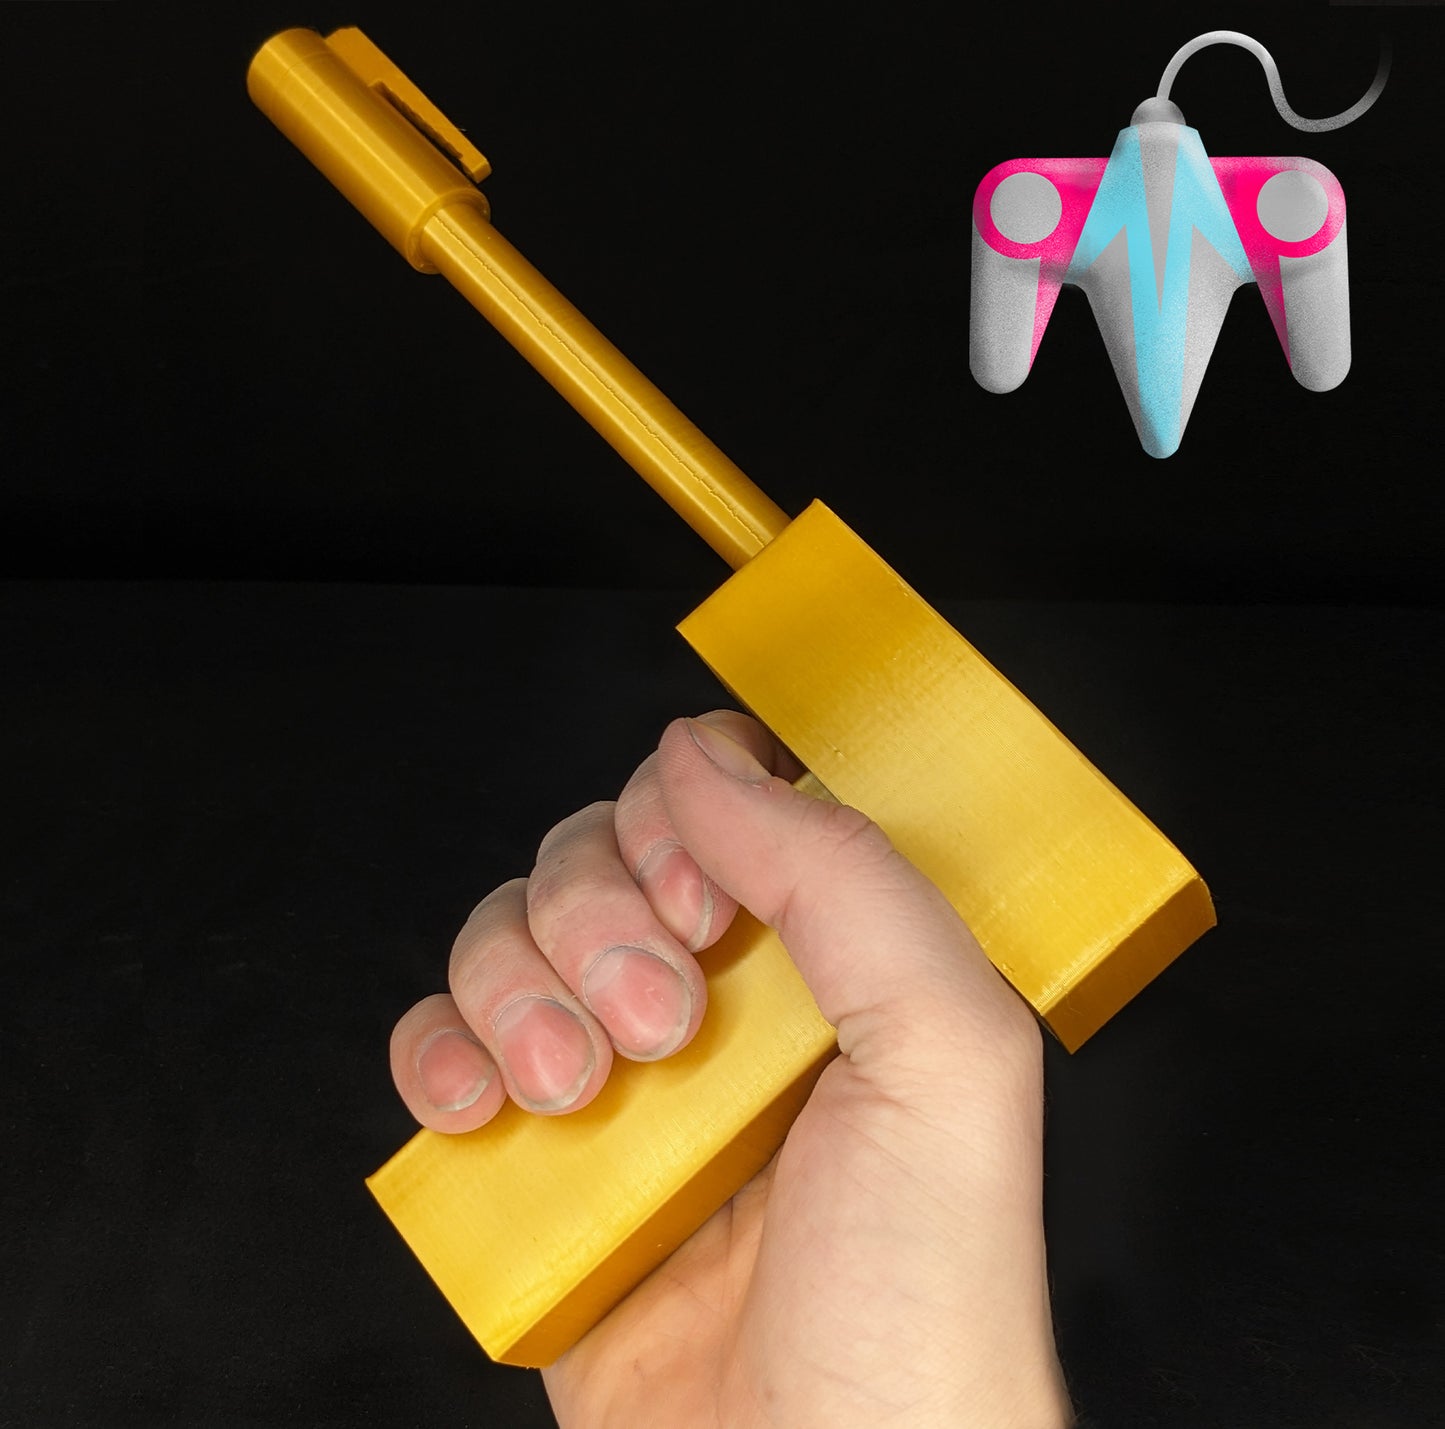 3D Printed Golden Gun